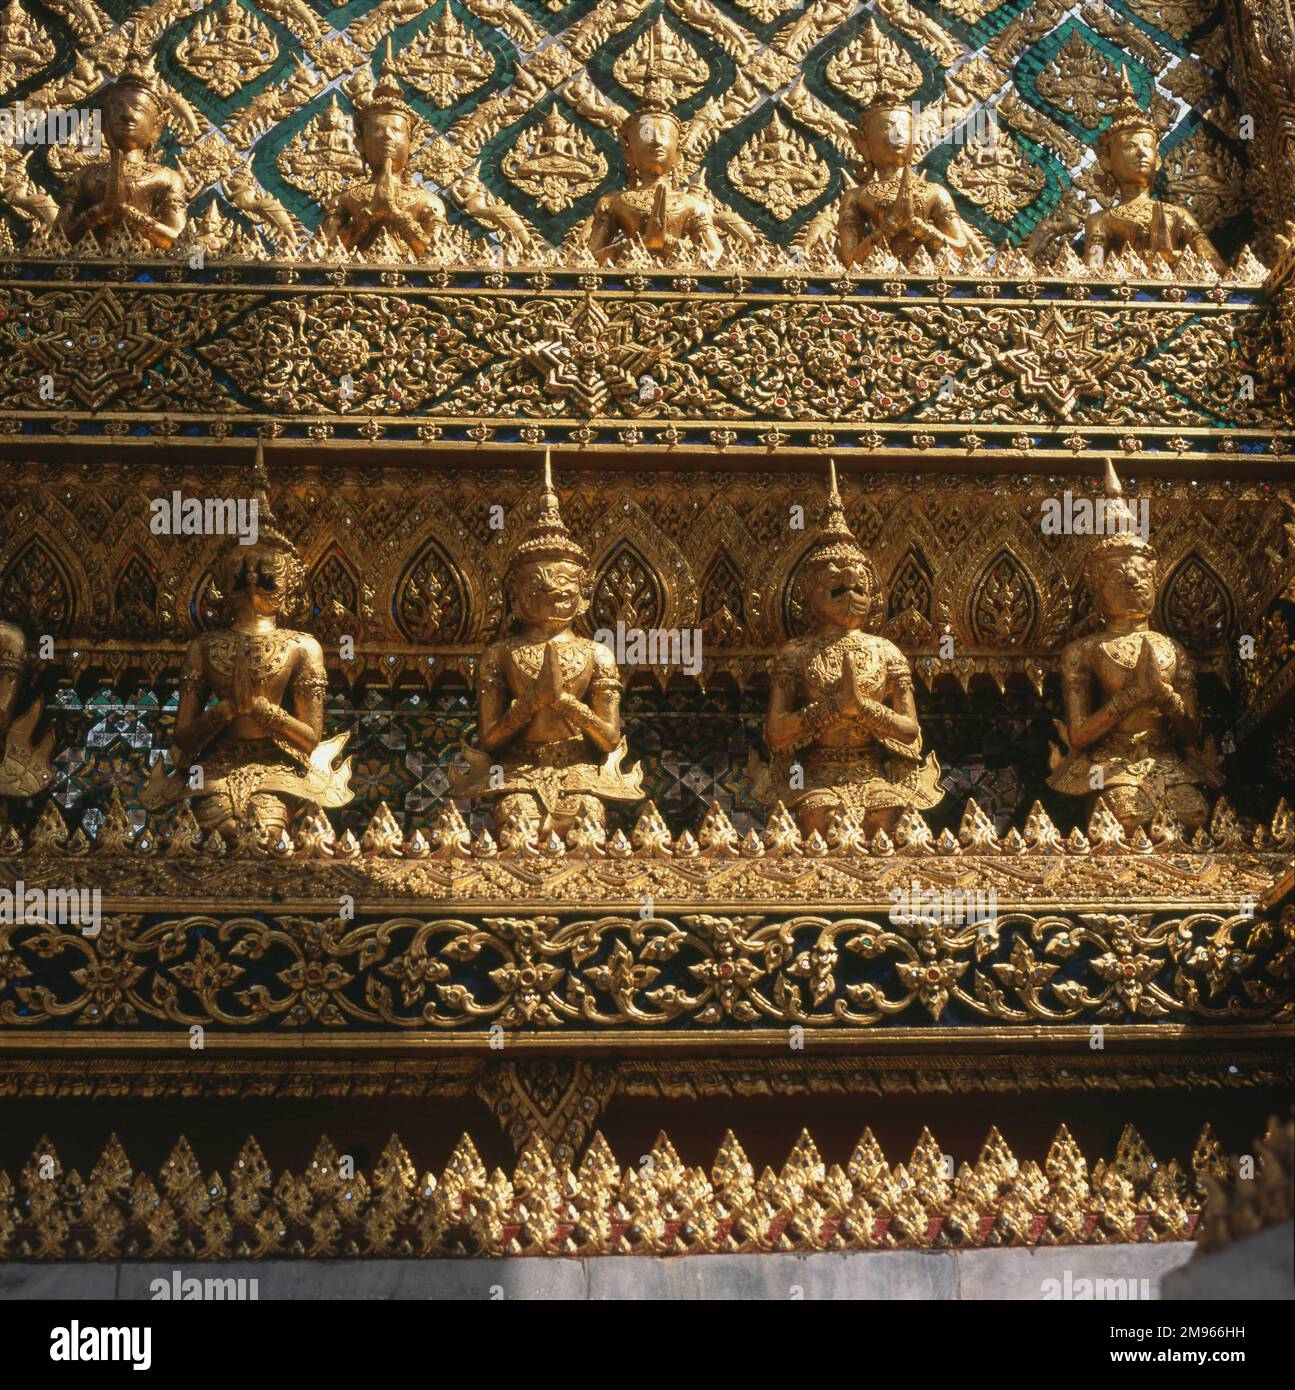 Eine Reihe von Hüterstatuen entlang der aufwendigen Phra Mondop (Bibliothek) des Wat Phra Keo (Tempel des Smaragd-Buddha), Bangkok, Thailand. Der Bau begann 1785 -- der Tempel besteht aus hoch dekorierten heiligen Gebäuden, Statuen und Pagoden. Stockfoto